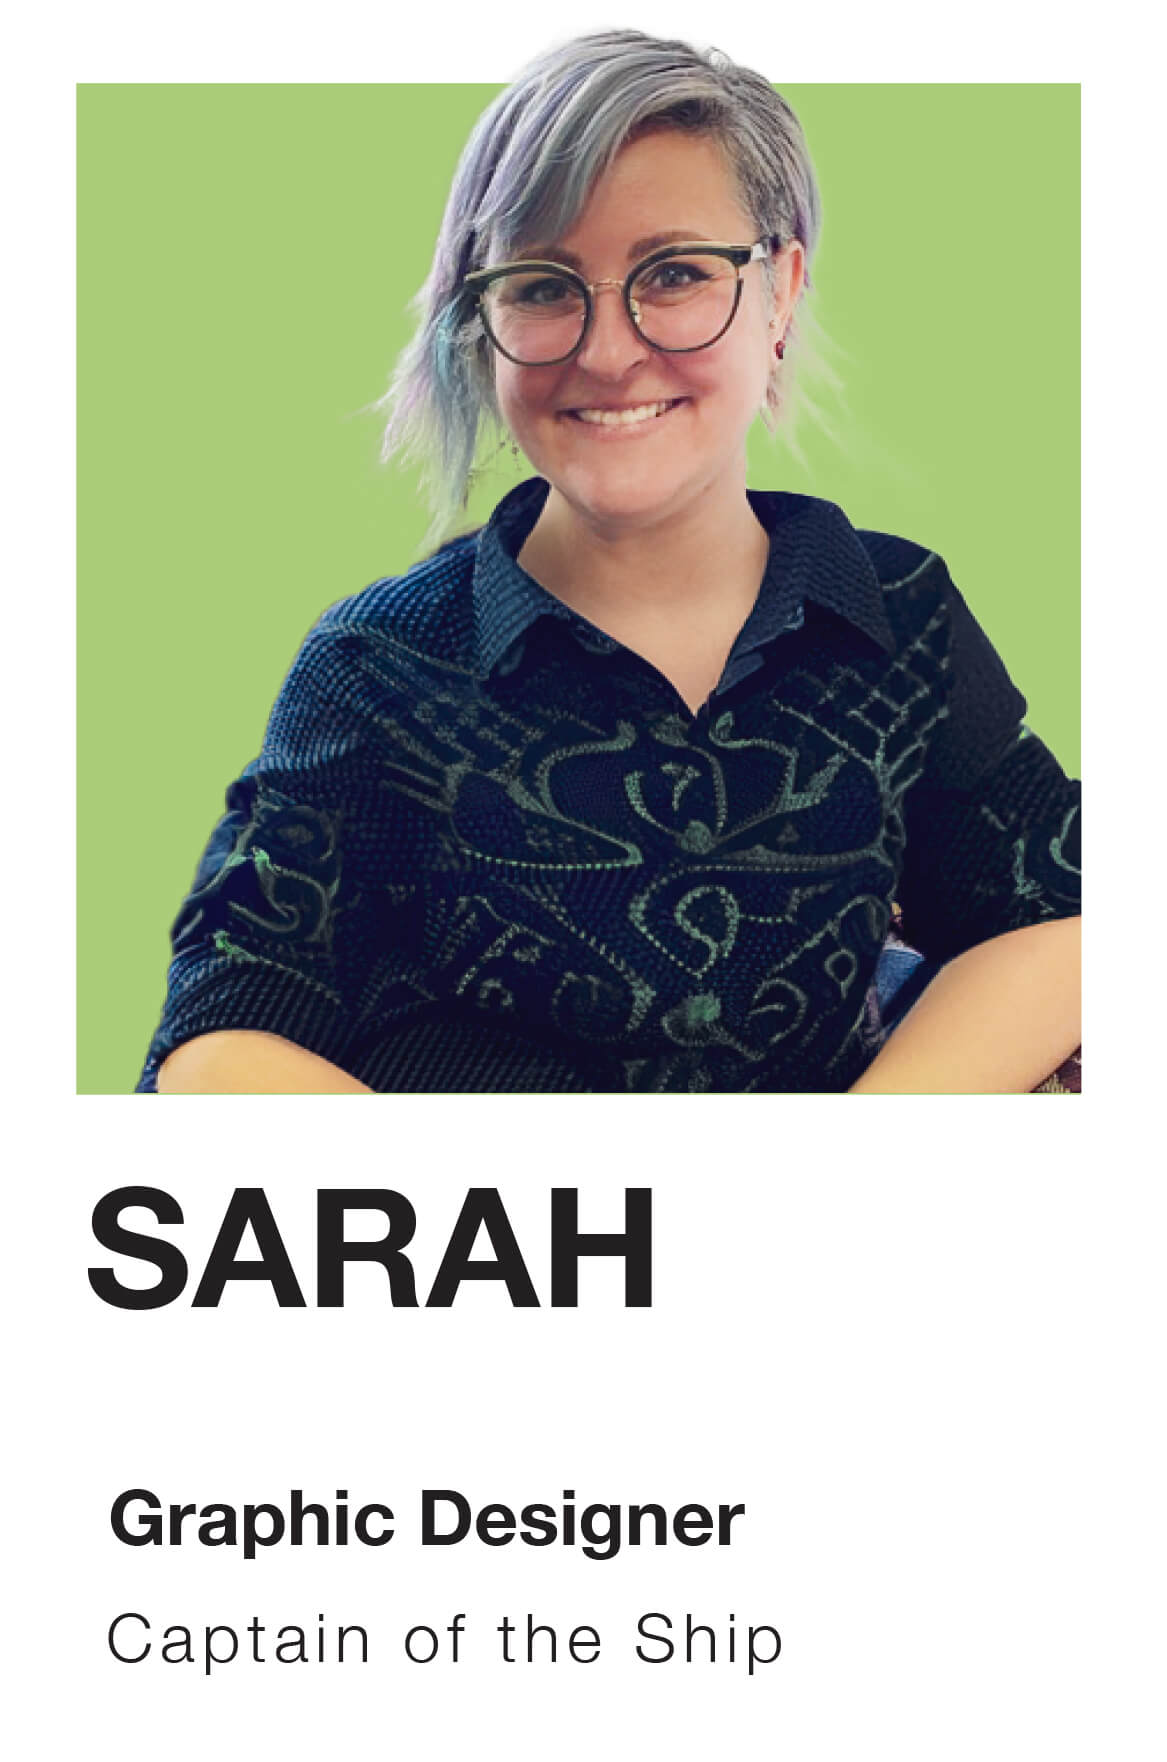 Portrait of Sarah Crane, Graphic Designer at Frolic Design